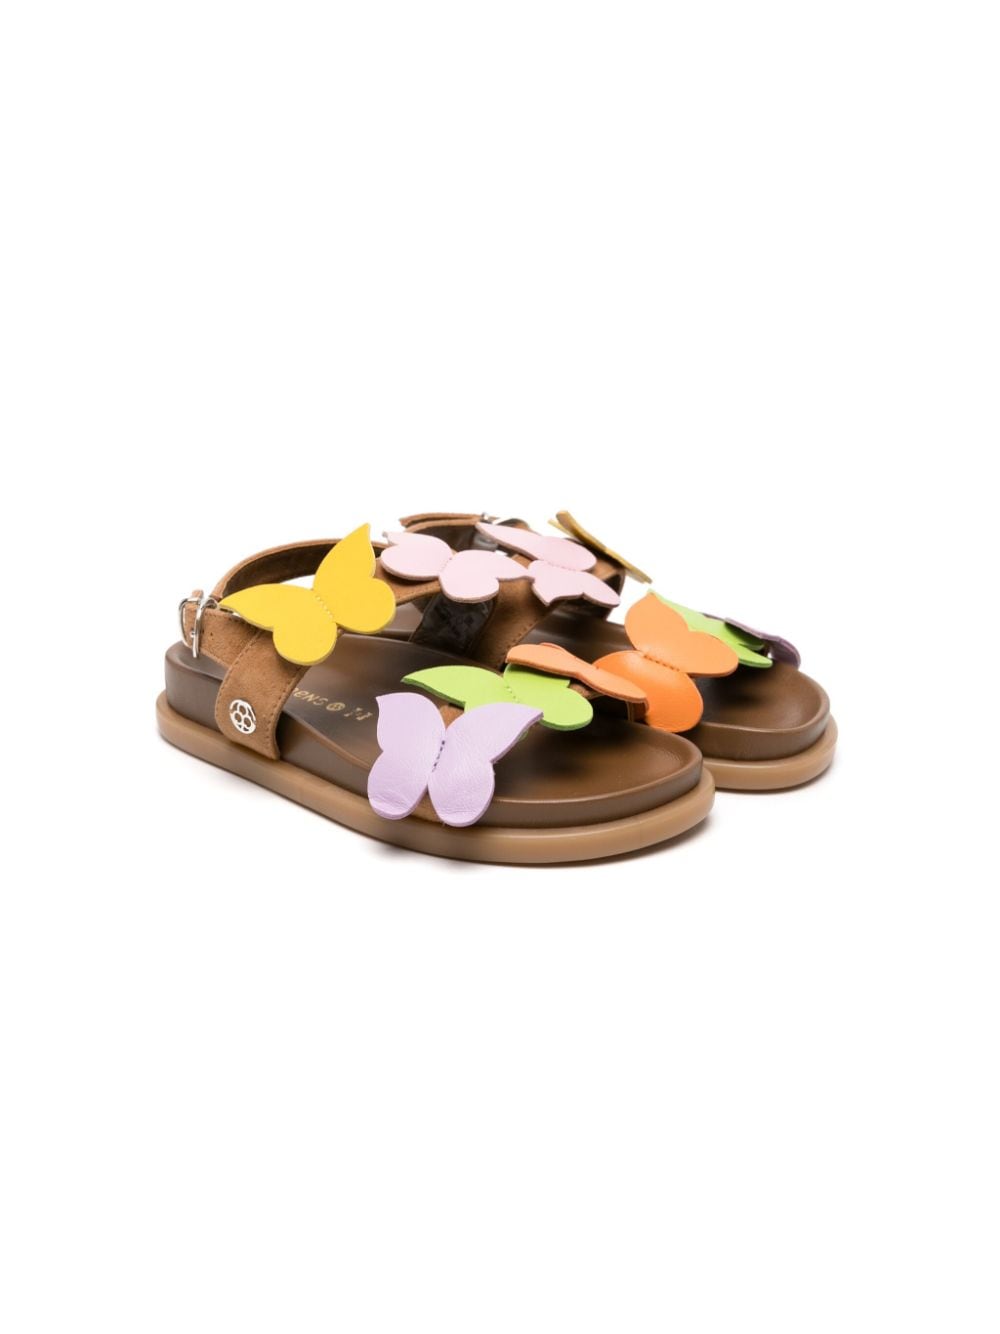 Sandales fille multicolores